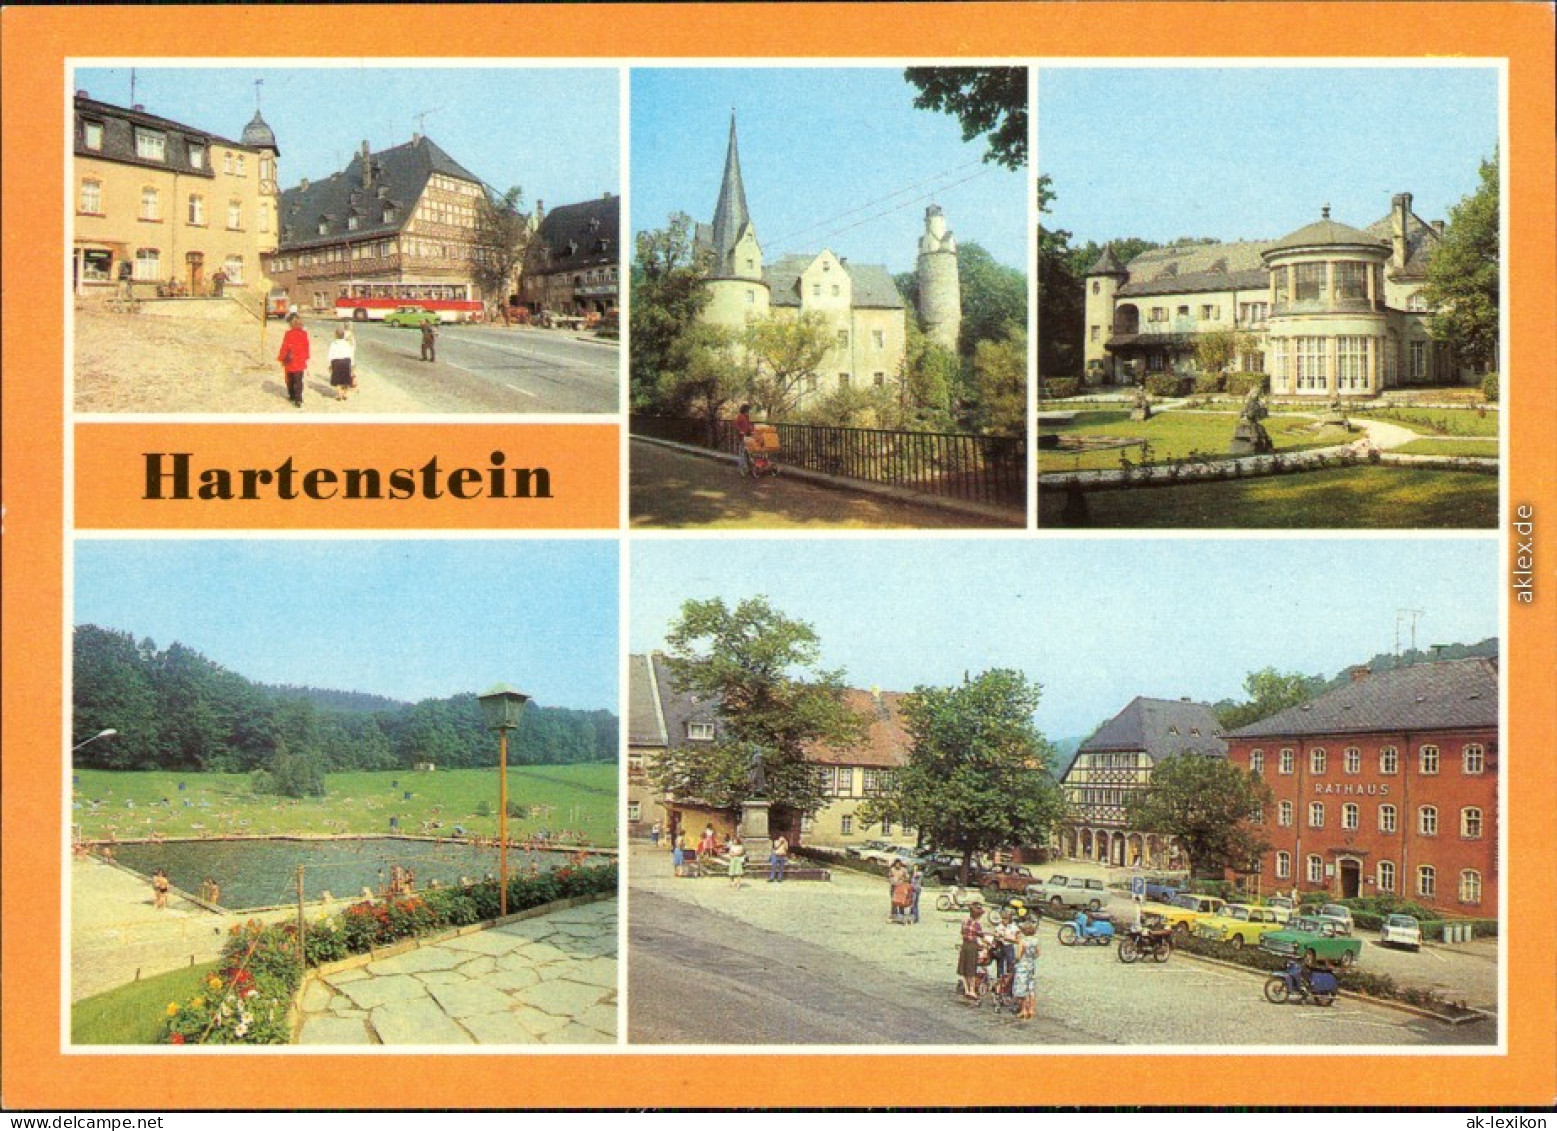 Hartenstein (Sachsen) Historische Gaststätte Wewißes Roß Thälmann-Platz 1983 - Hartenstein